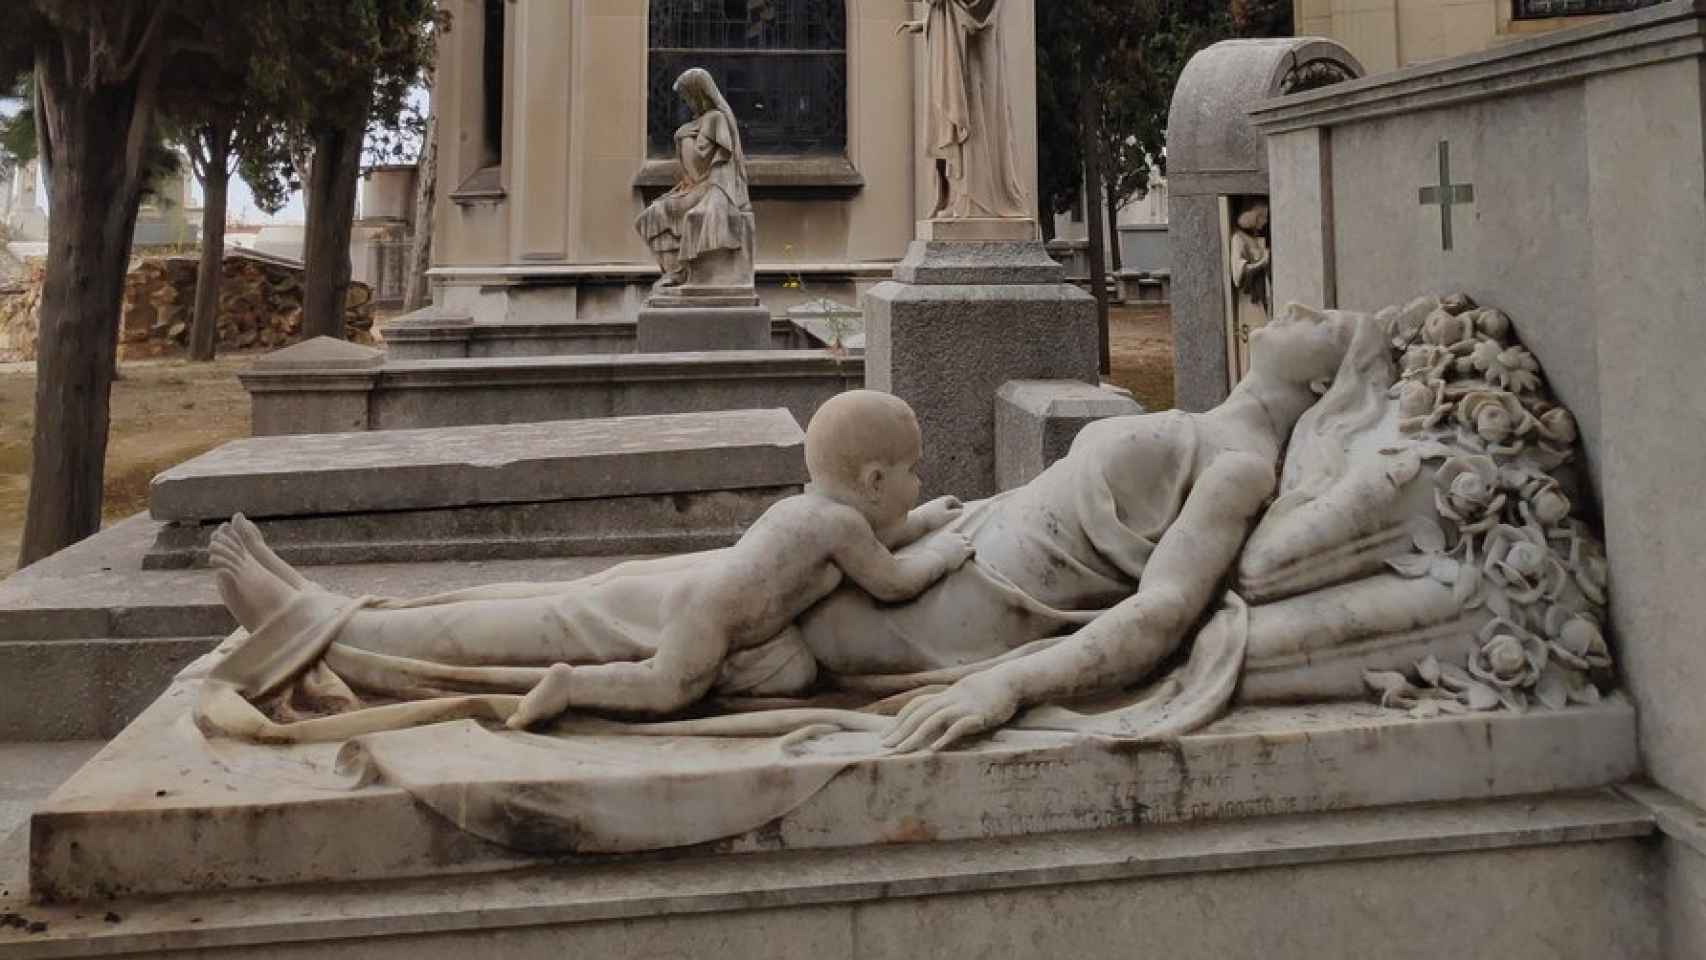 El misterio de la escultura de una madre y un bebé en un cementerio de Barcelona